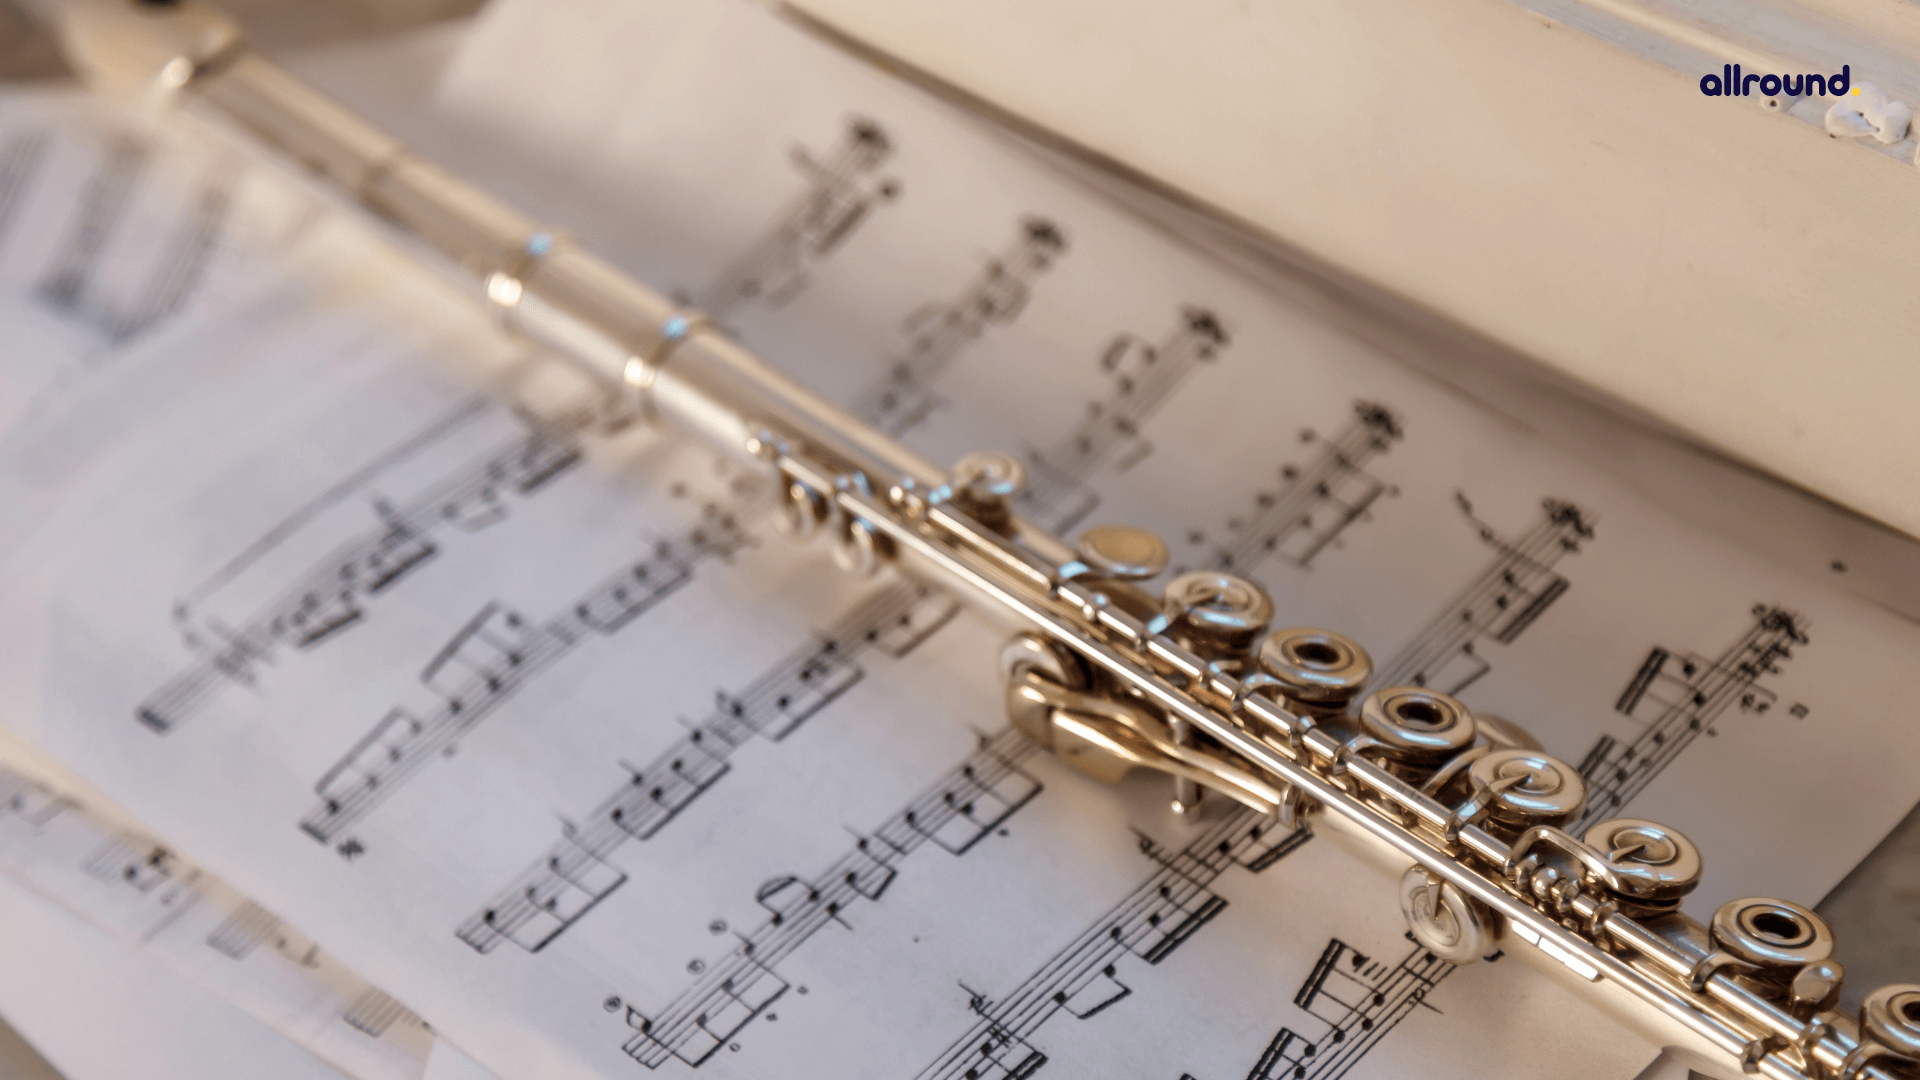 Flute Sheet Music